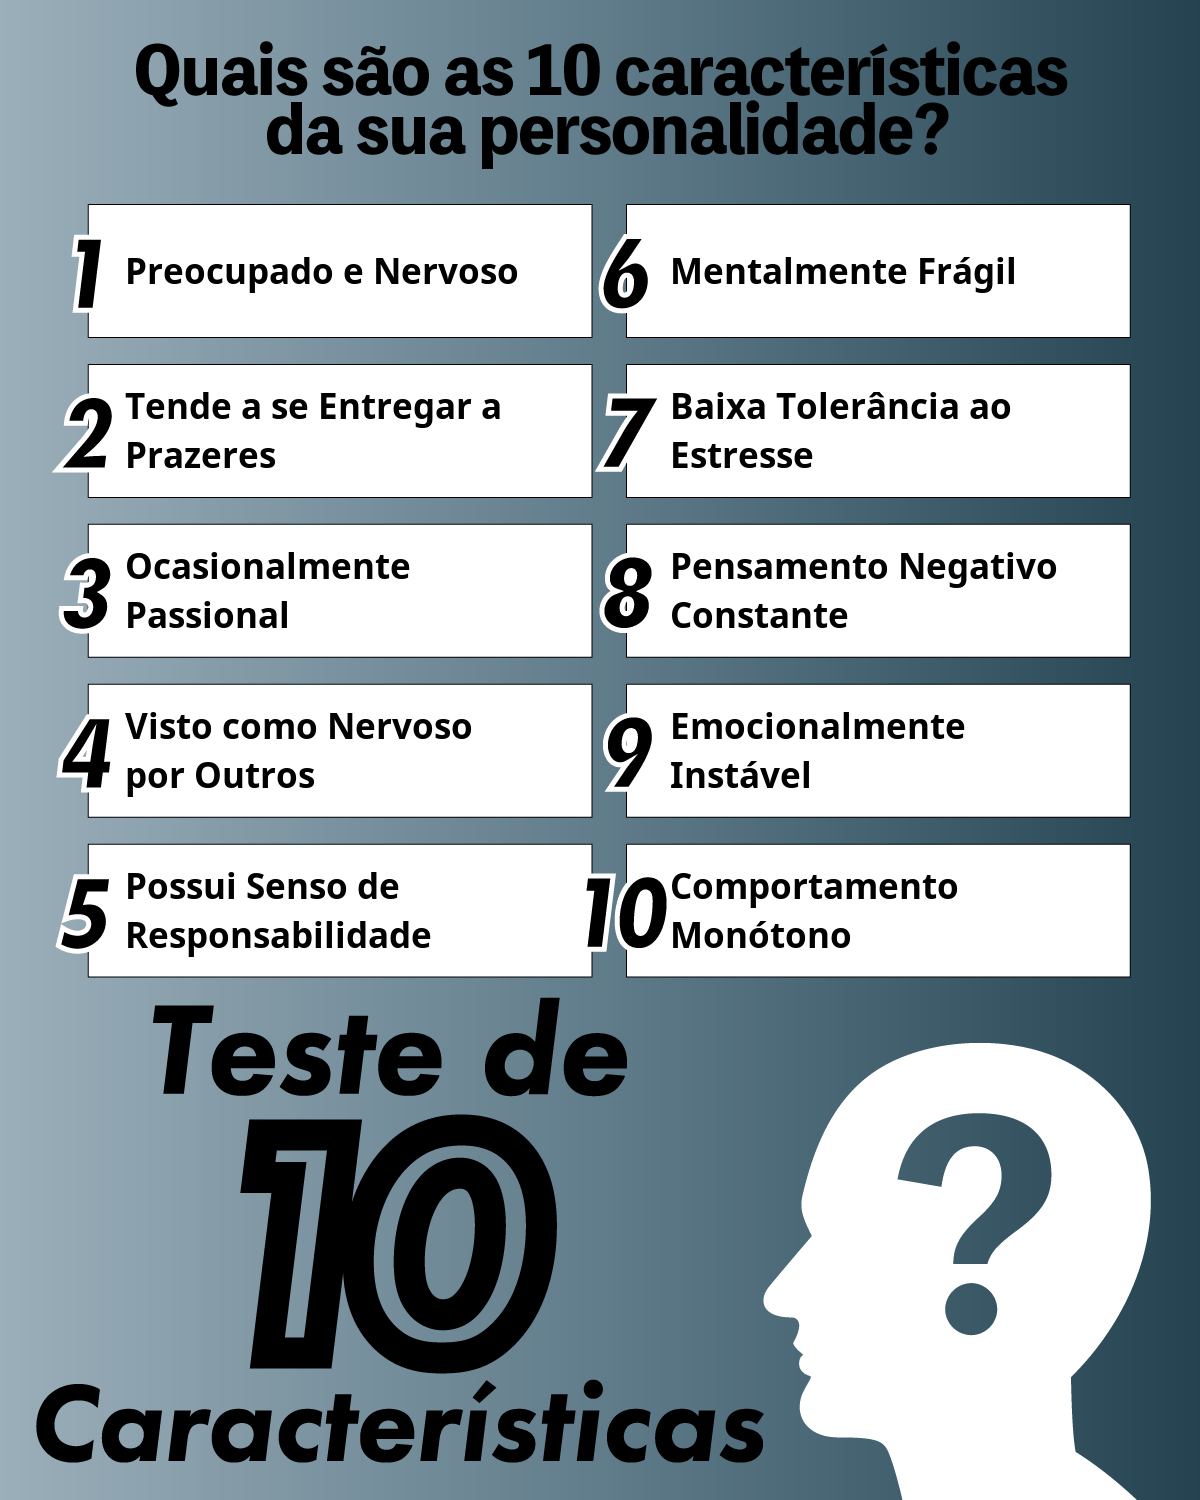 Teste de 10 Características | Quais são as 10 características da sua personalidade?